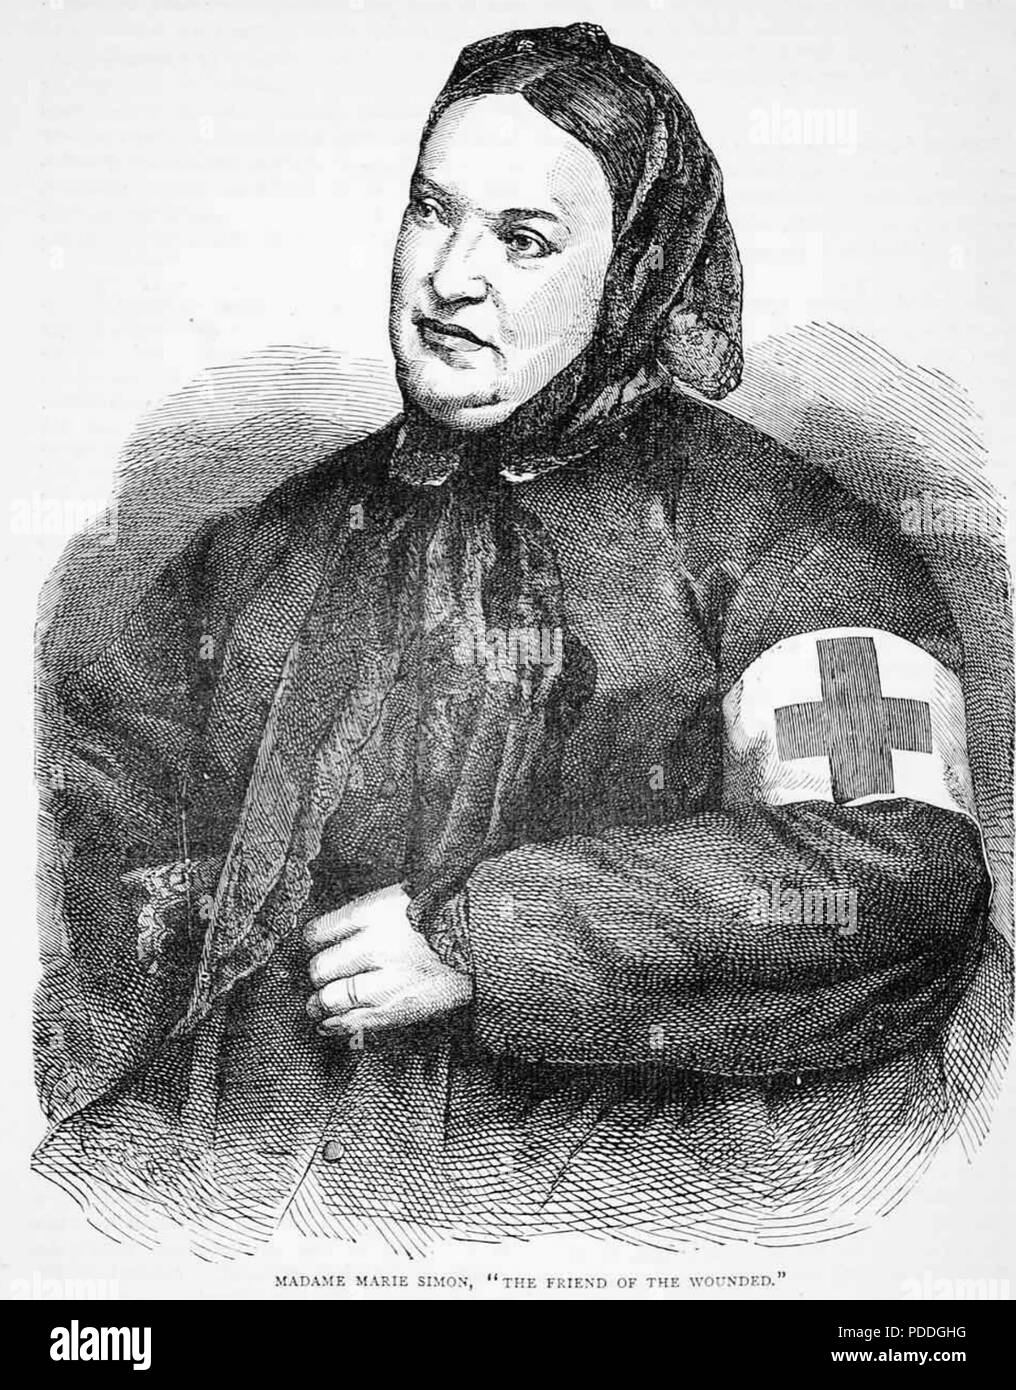 MARIE SIMON infirmière française durant la guerre franco-prussienne de 1870-71 Banque D'Images